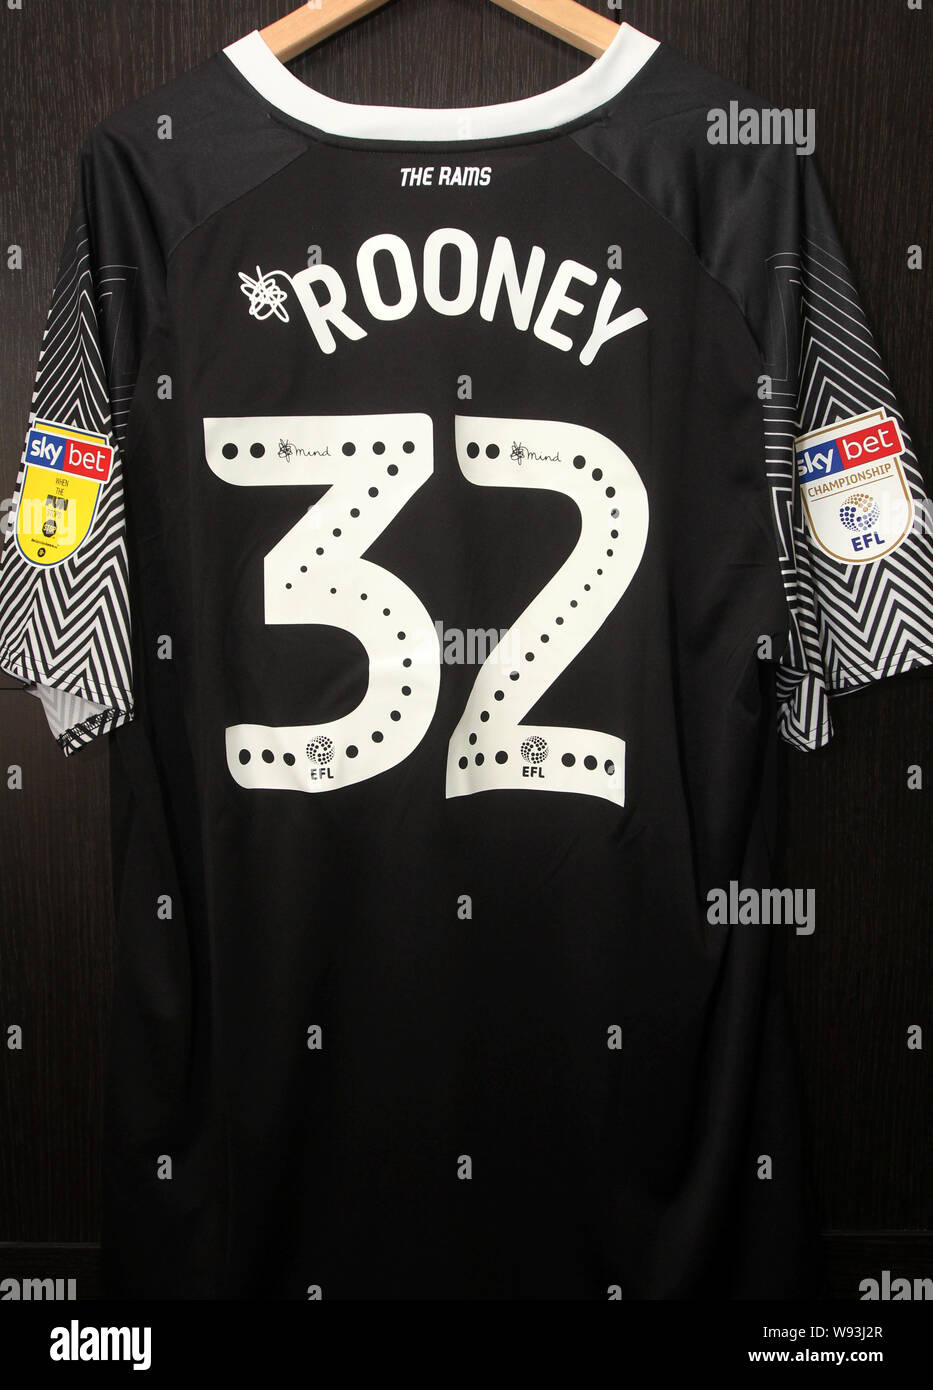 Derby County FC Official kit Replica che mostra la Wayne Rooney numero 32 Shirt con gli sponsor 32 rosso. Anche Campionato Skybet loghi. Foto Stock